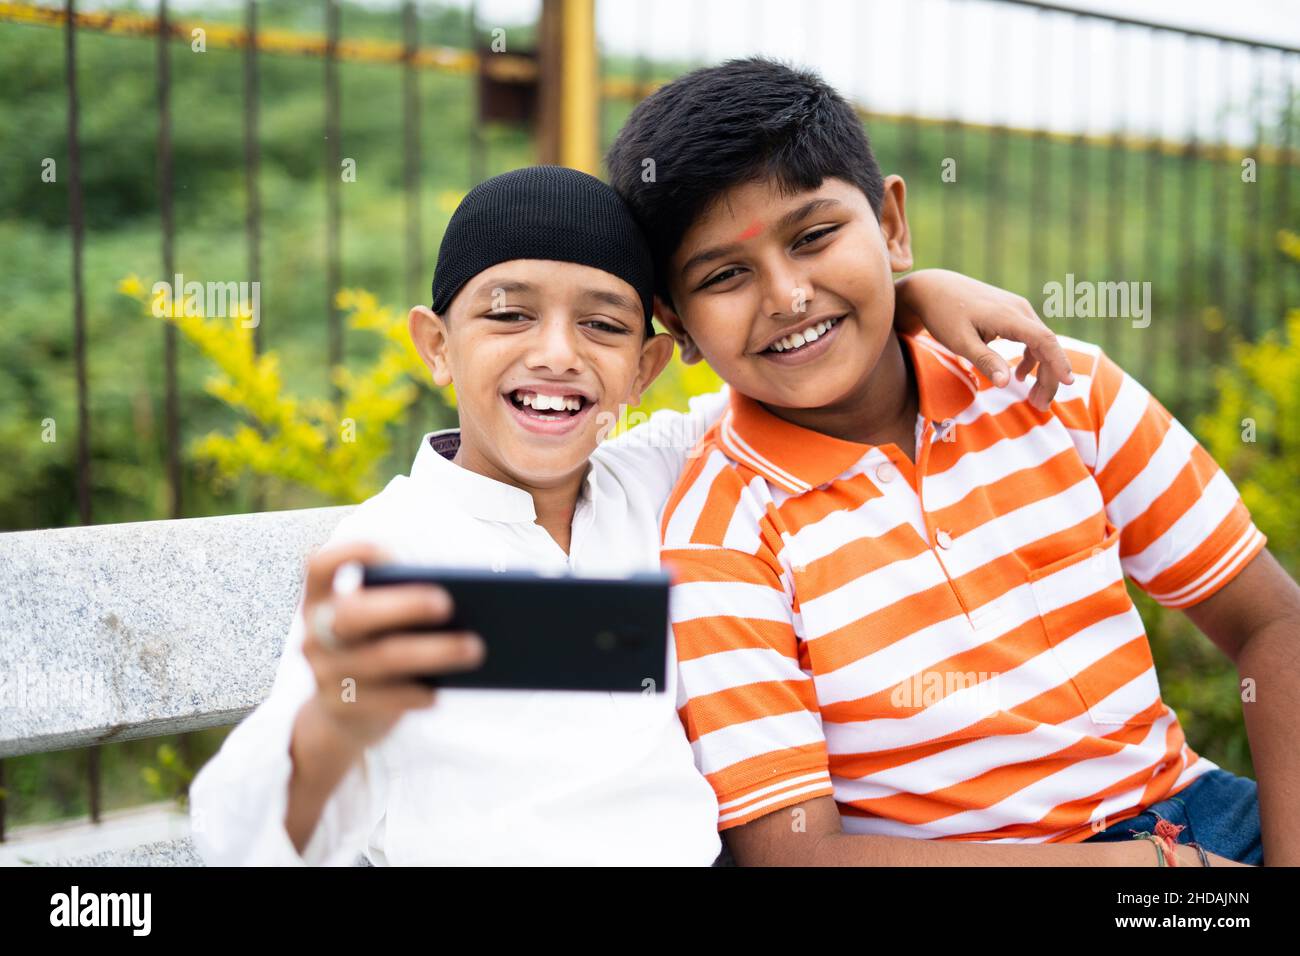 Zwei glückliche, multiethnische Kinder, die im Park Selfie auf dem Handy machen – ein Gepräch aus Freundschaft, religiöser Vielfalt und sozialer Harmonie Stockfoto